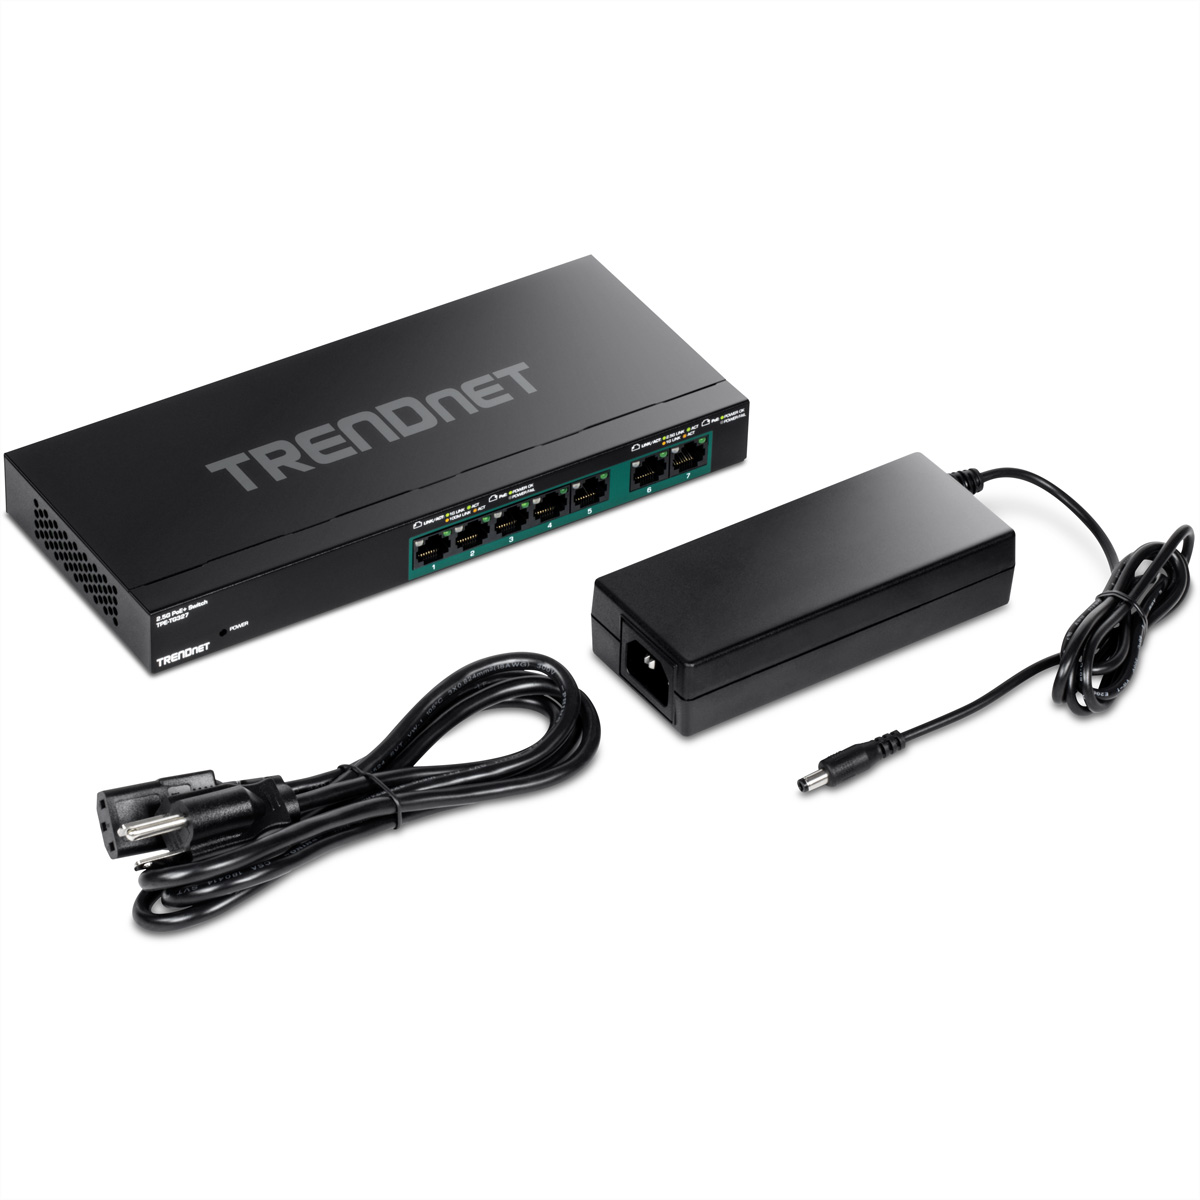 TRENDNET TPE-TG327 7-Port Switch PoE+ Multi-Gigabit PoE Gigabit Switch